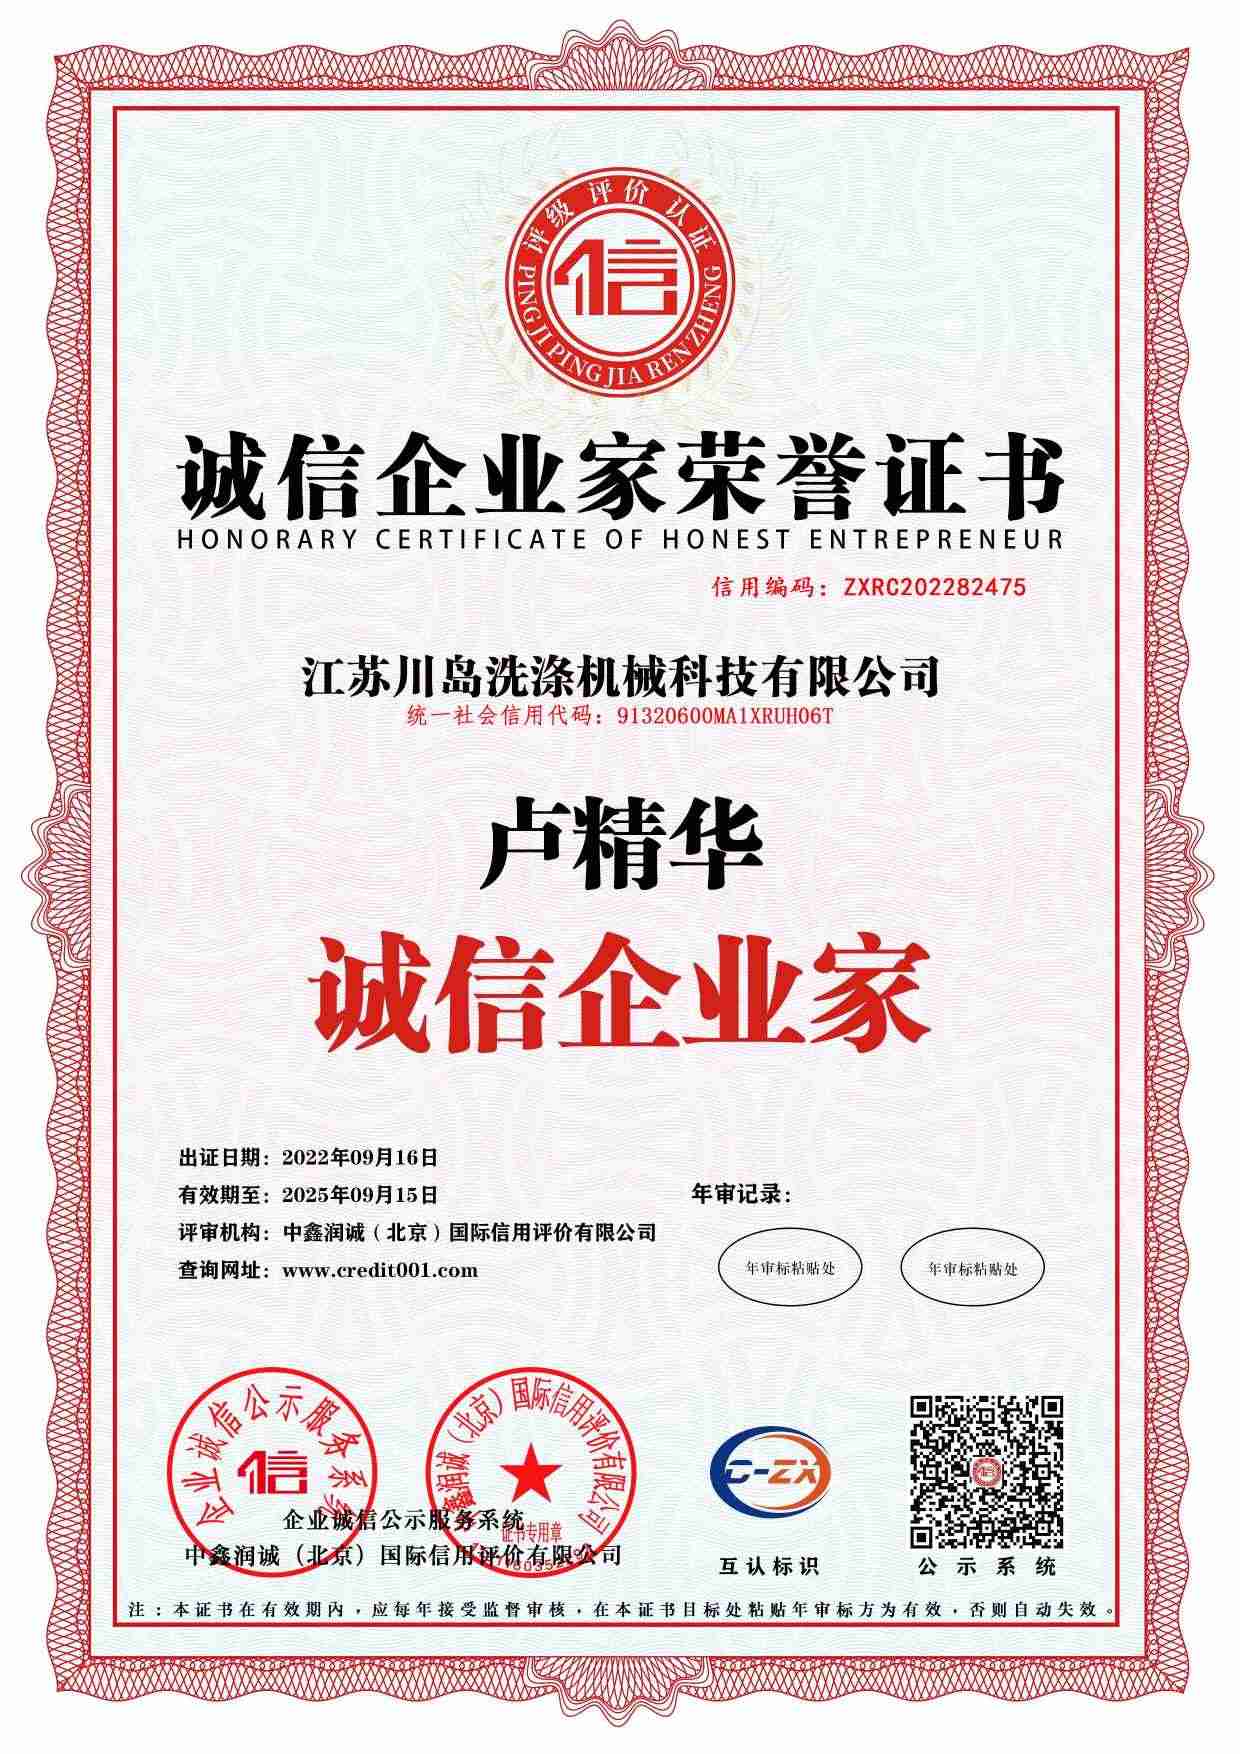 Enterprise credit rating certificate (8)